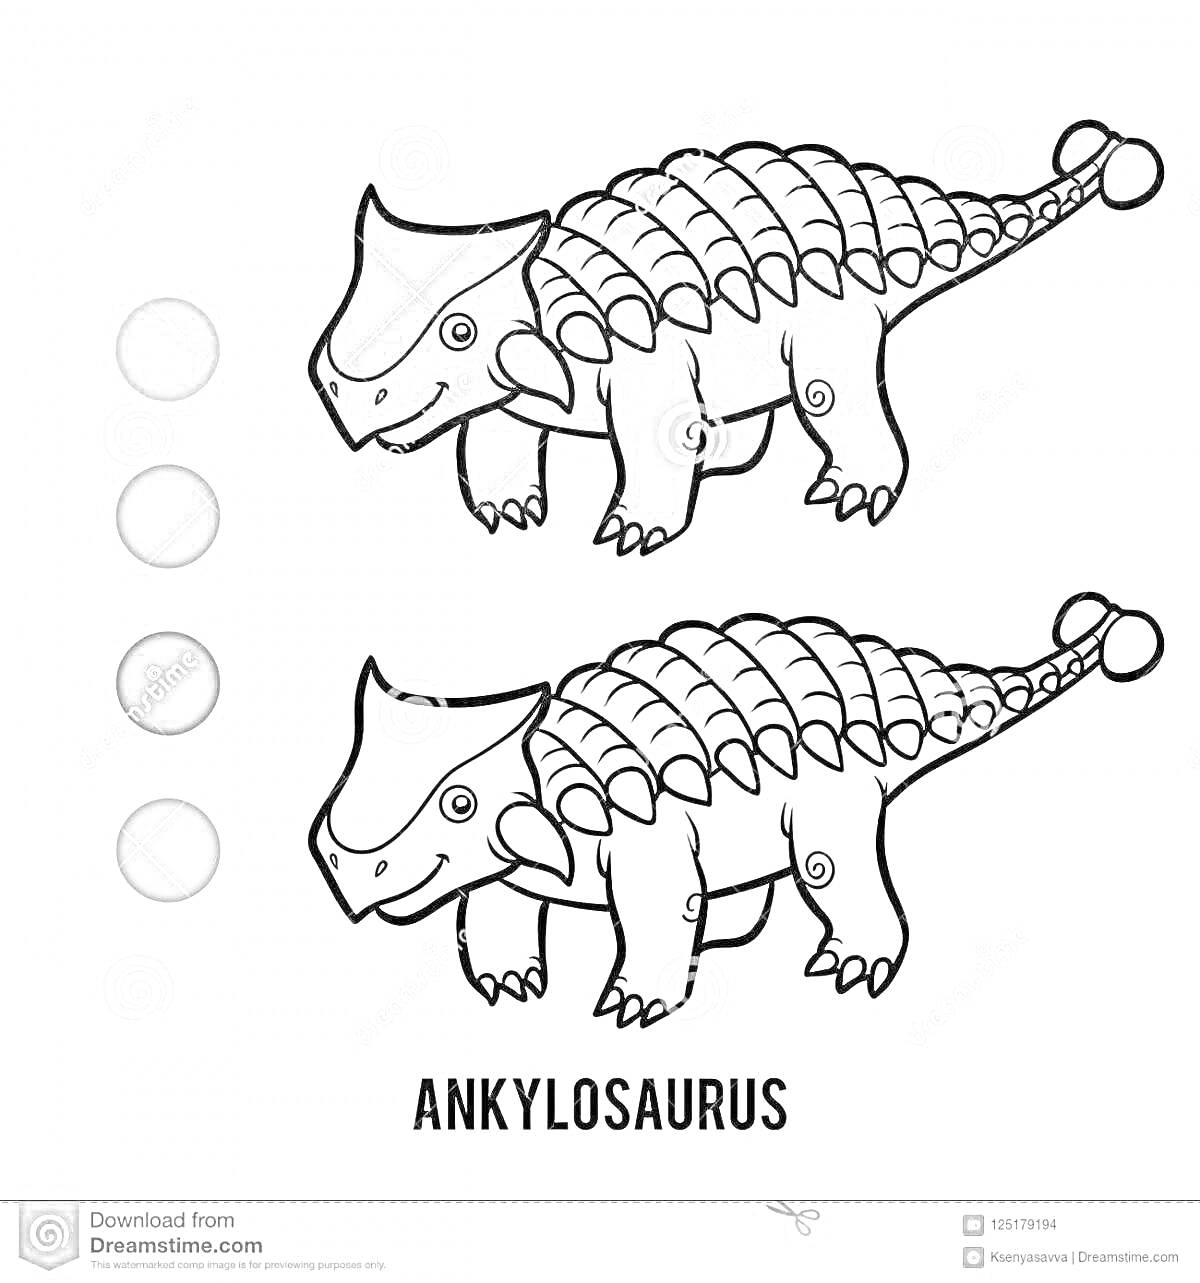 Раскраска Раскраска с анкилозавром для детей, два анкилозавра (раскрашенный и нераскрашенный), палитра с тремя цветами (серый, тёмно-серый, светло-серый), надпись 